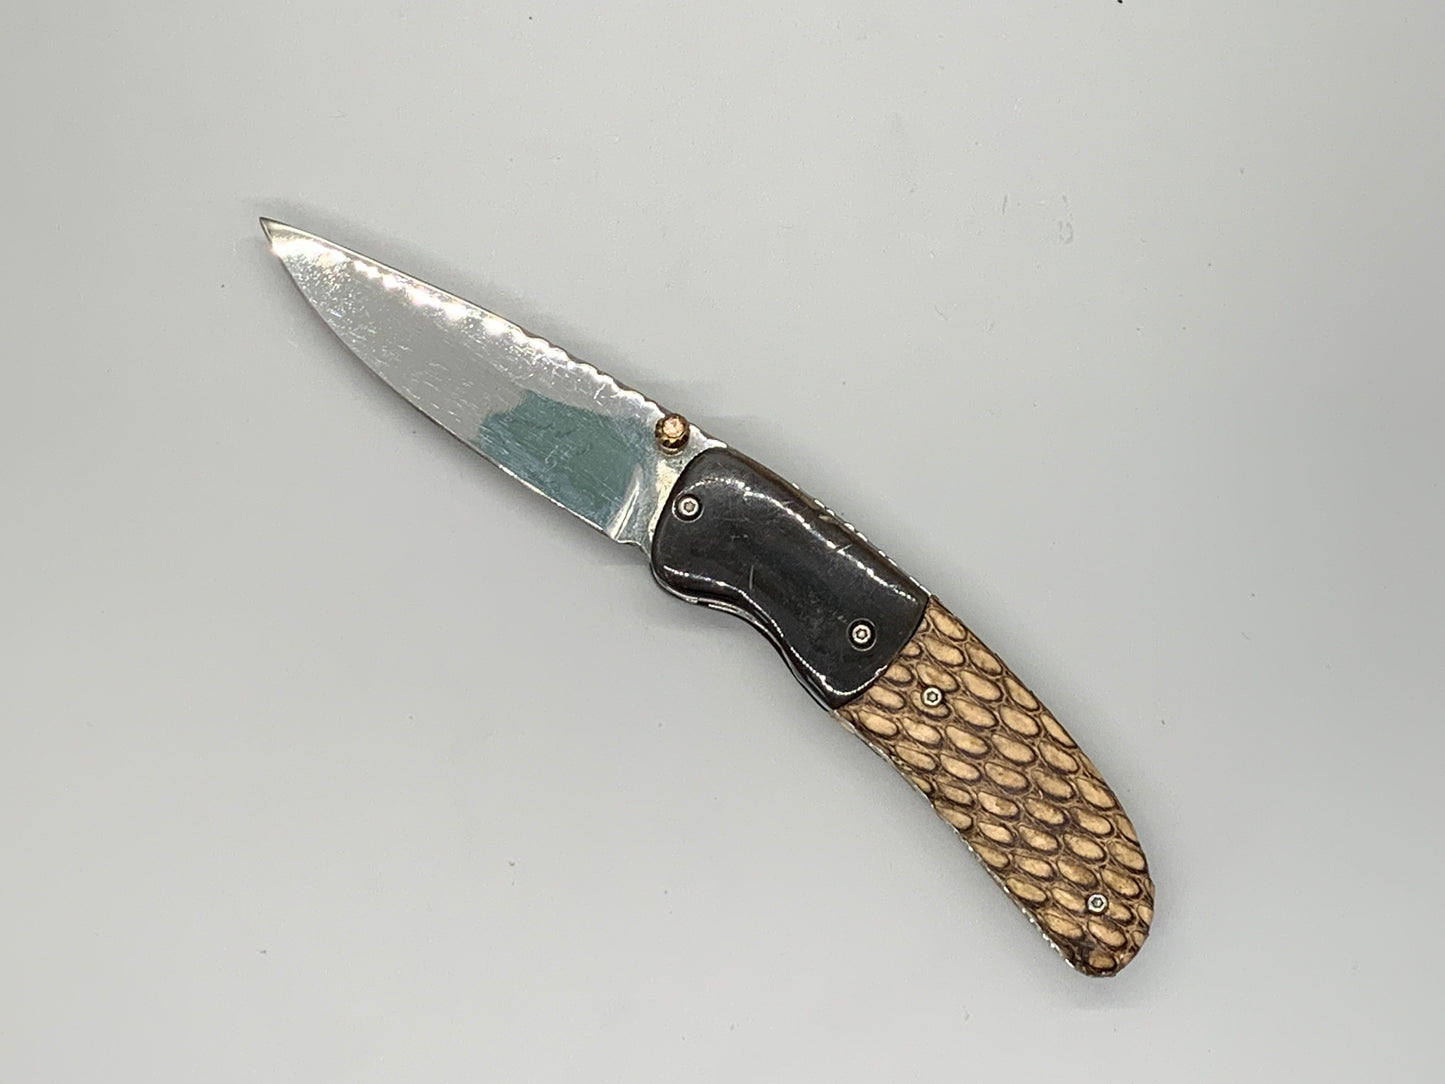 FD-059 Snake Skin Handle and Bull Horn Bolster Pocket Knife